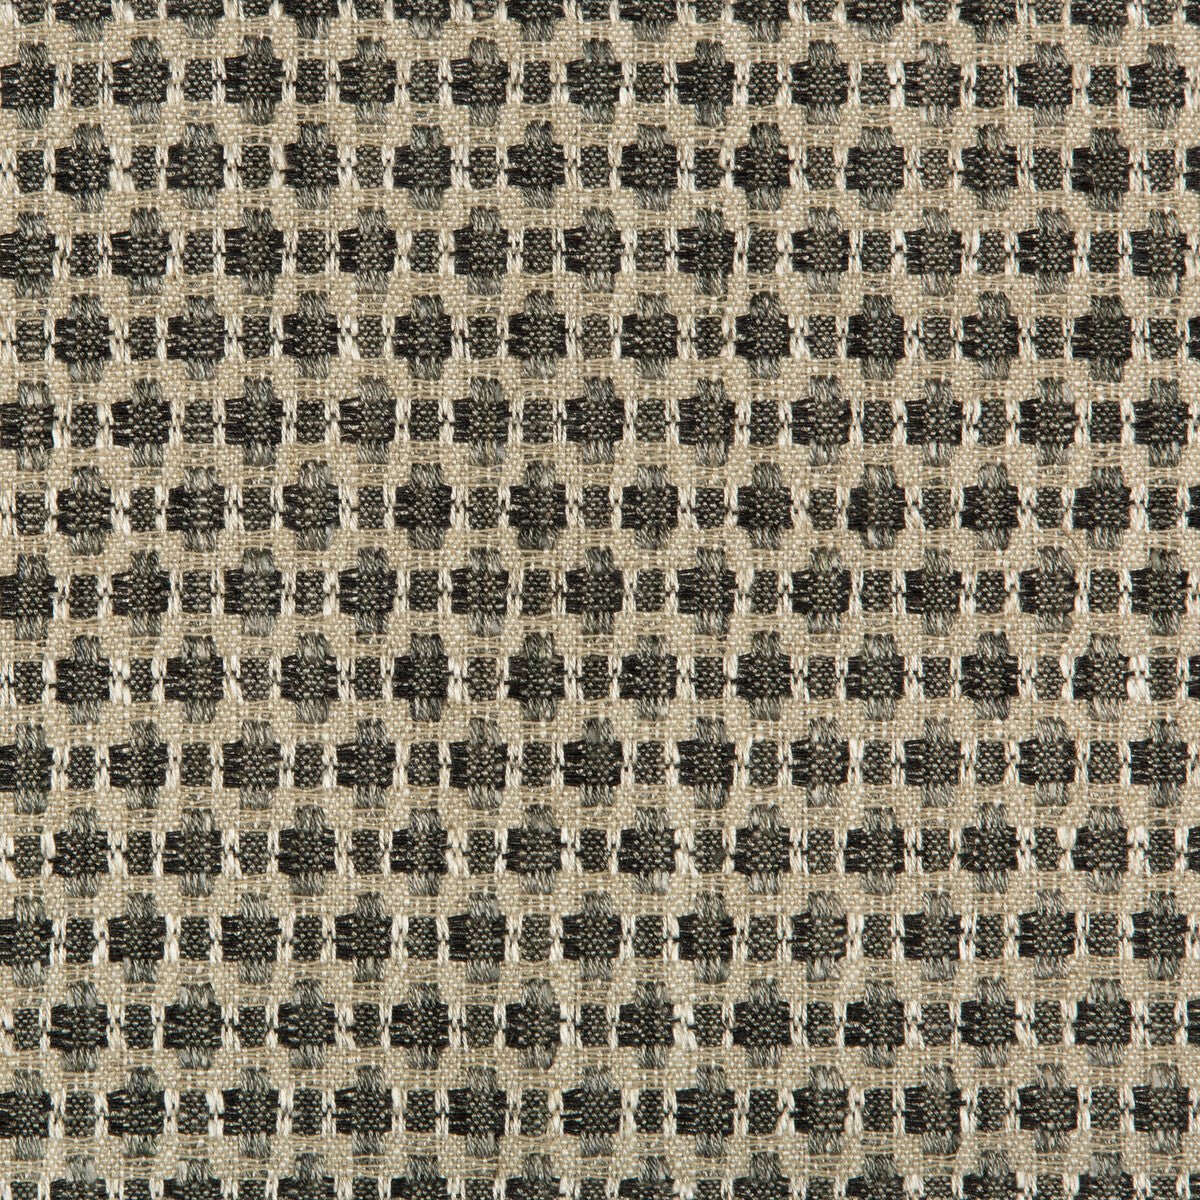 Kravet Design fabric in 35622-218 color - pattern 35622.218.0 - by Kravet Design